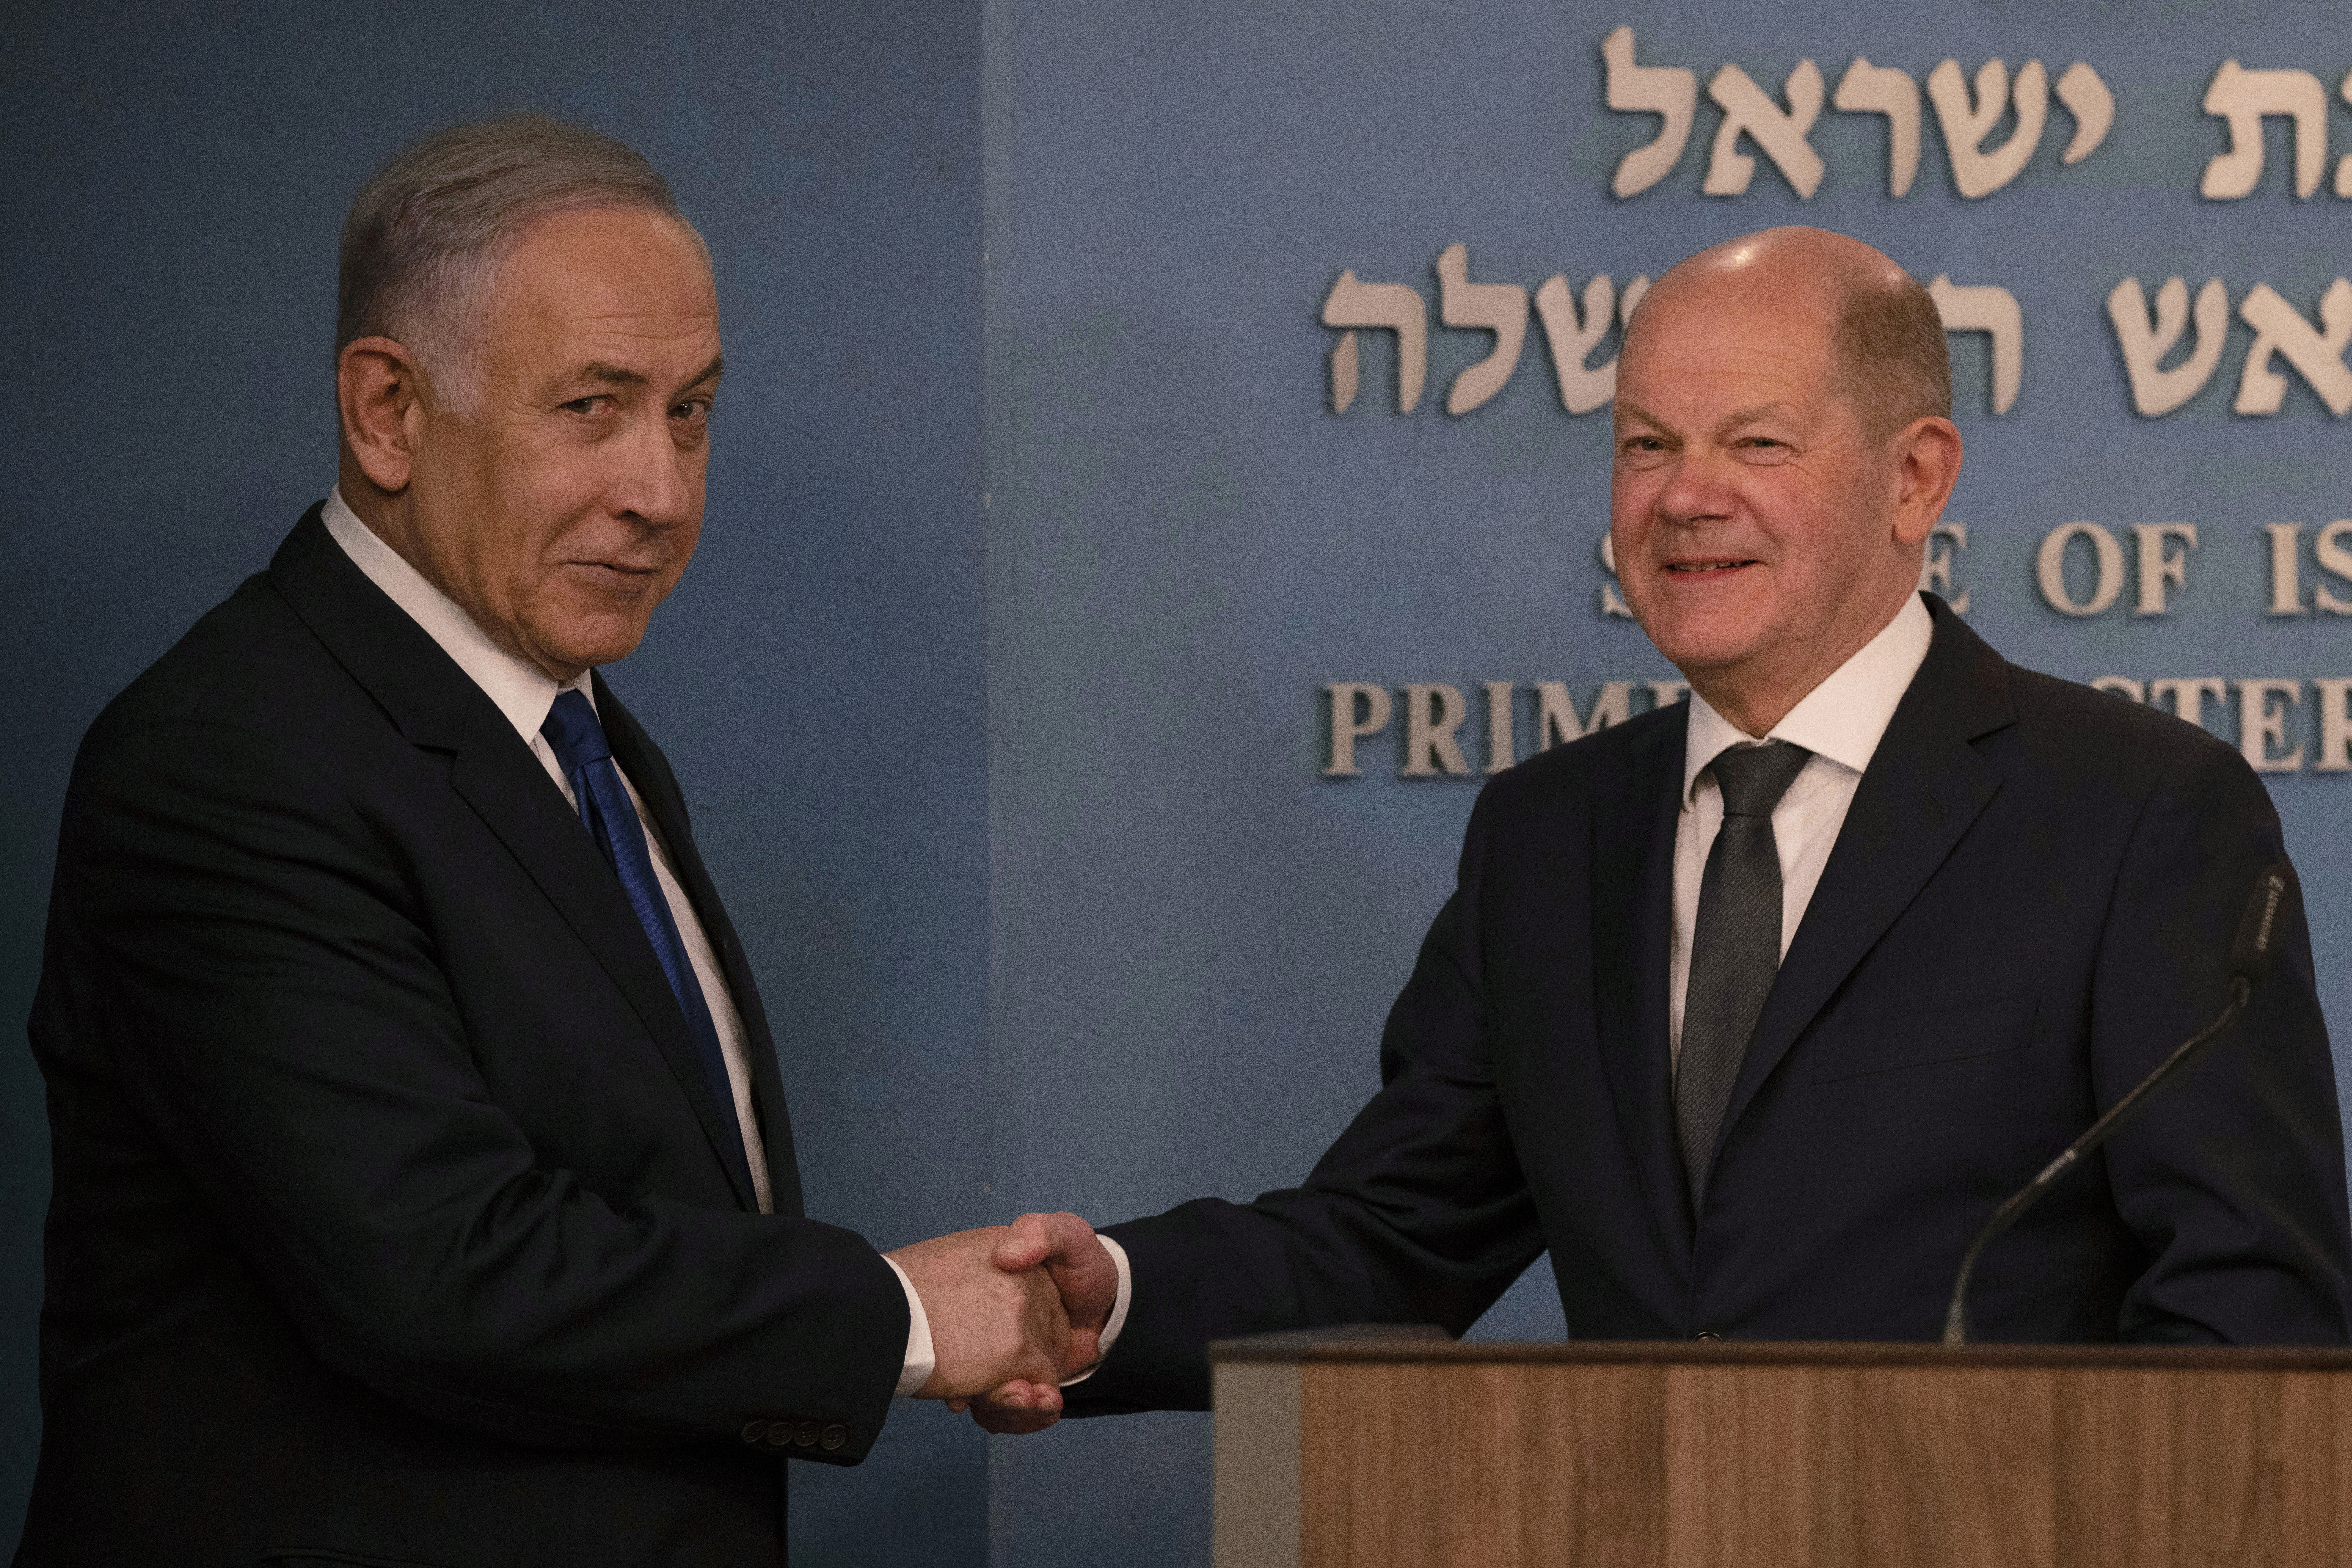 Der israelische Premierminister und Scholz geben sich nach ihren Reden die Hand